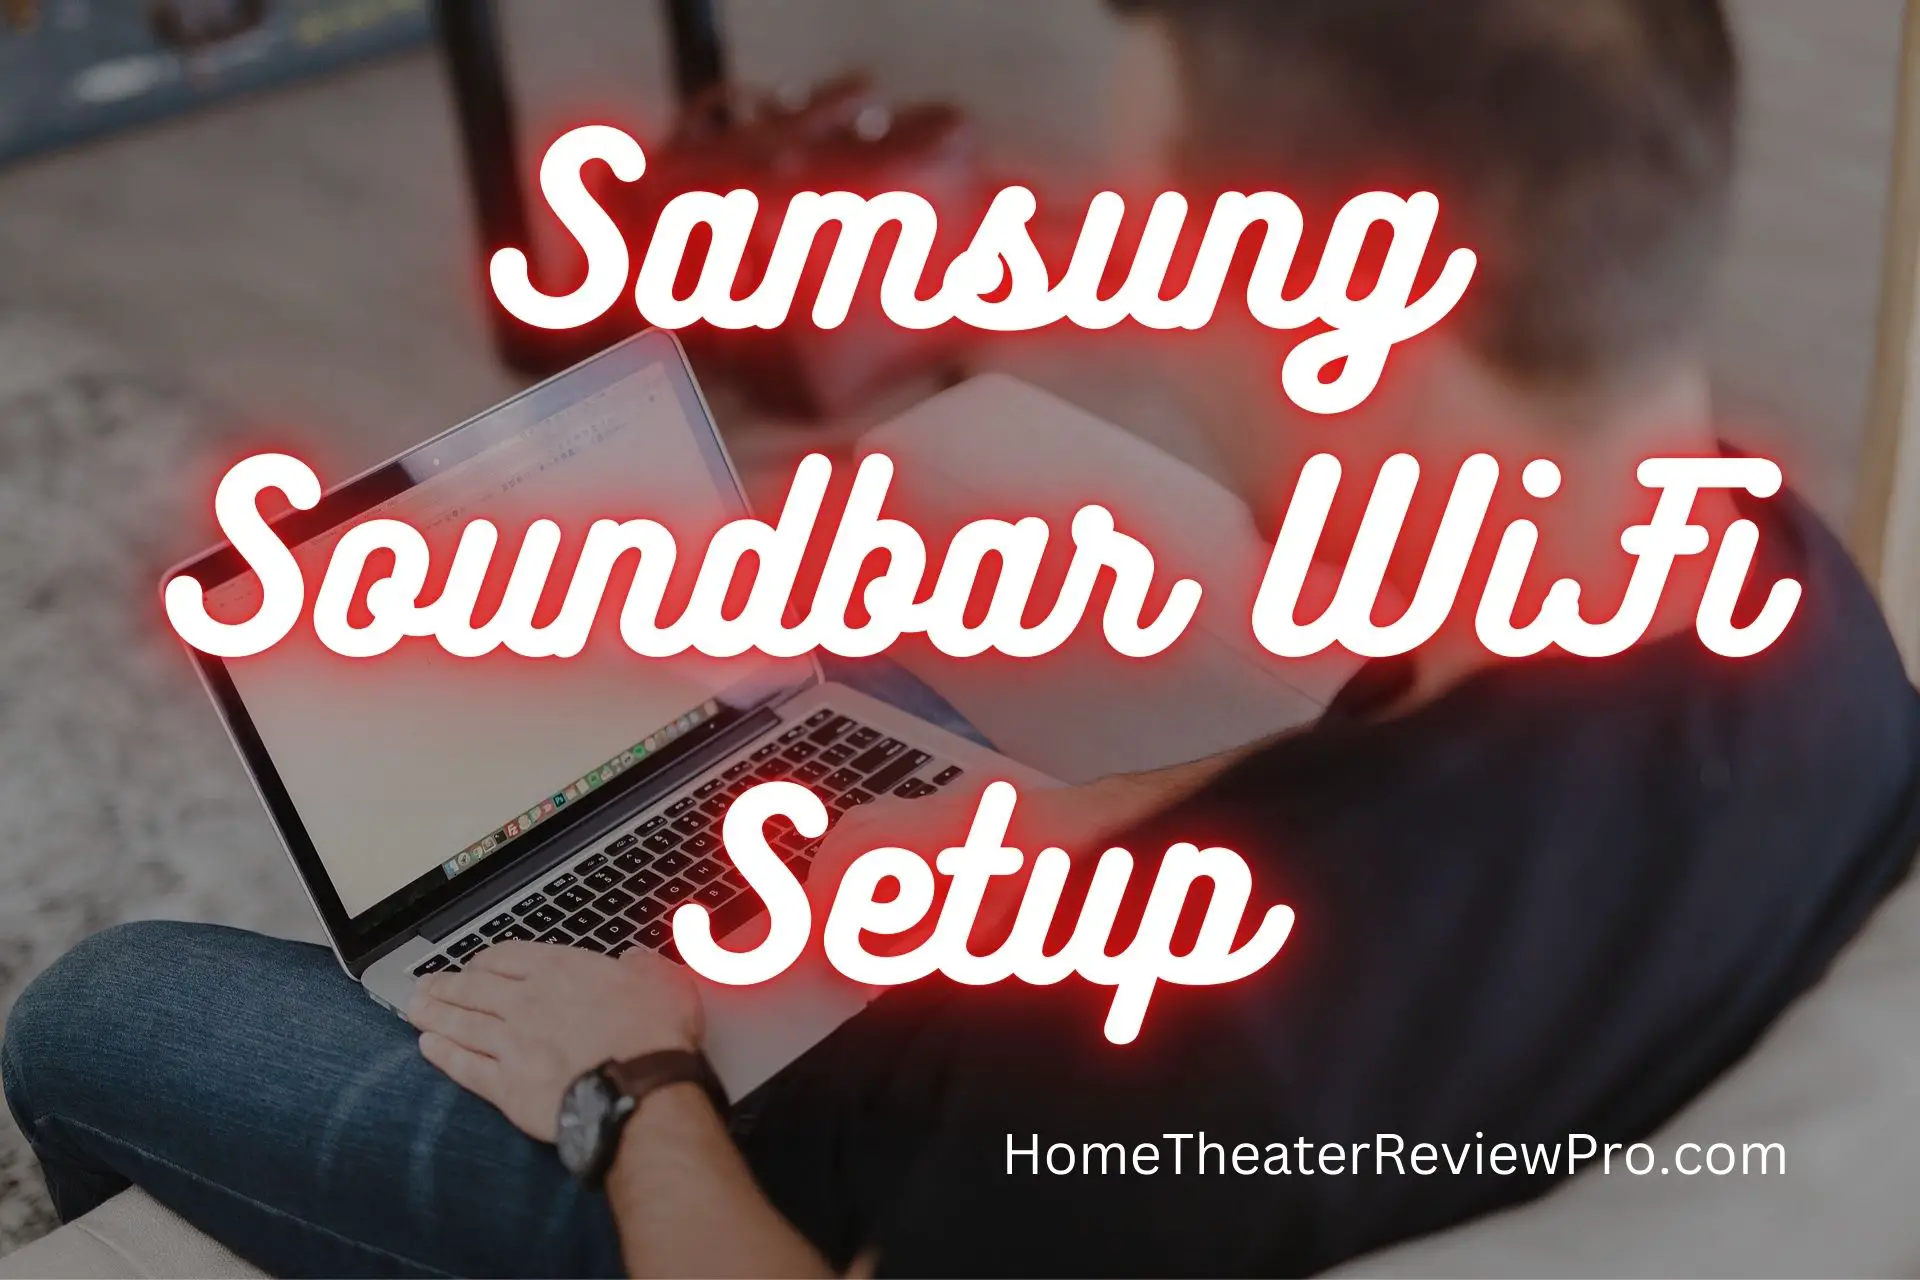 Samsung Soundbar WiFi Setup